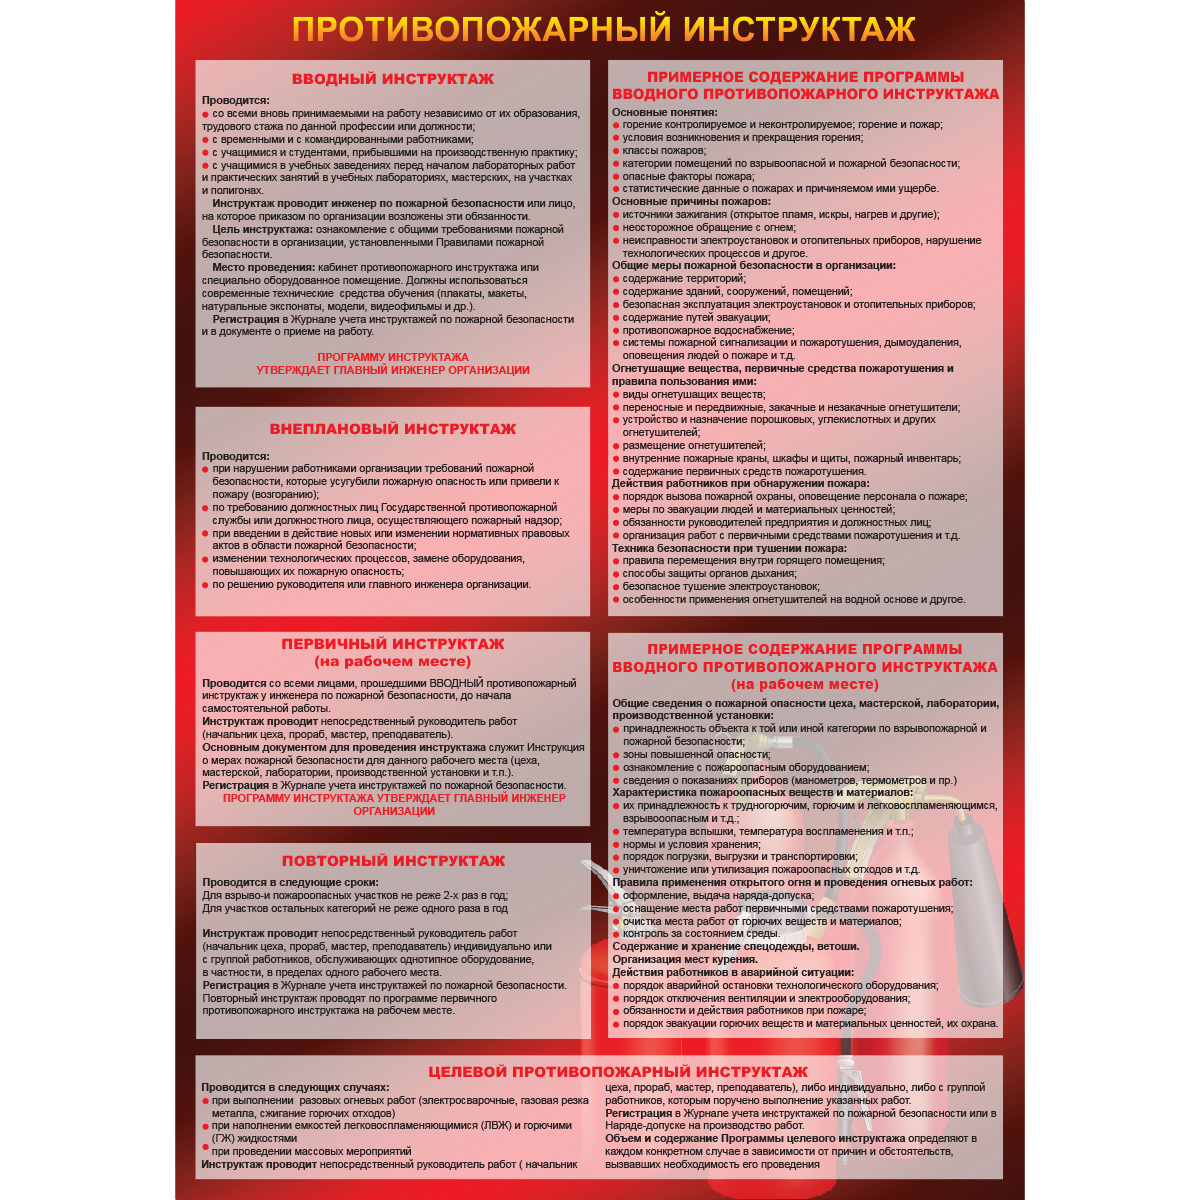 Плакат "Противопожарный инструктаж" (Пленка, 1 л.)